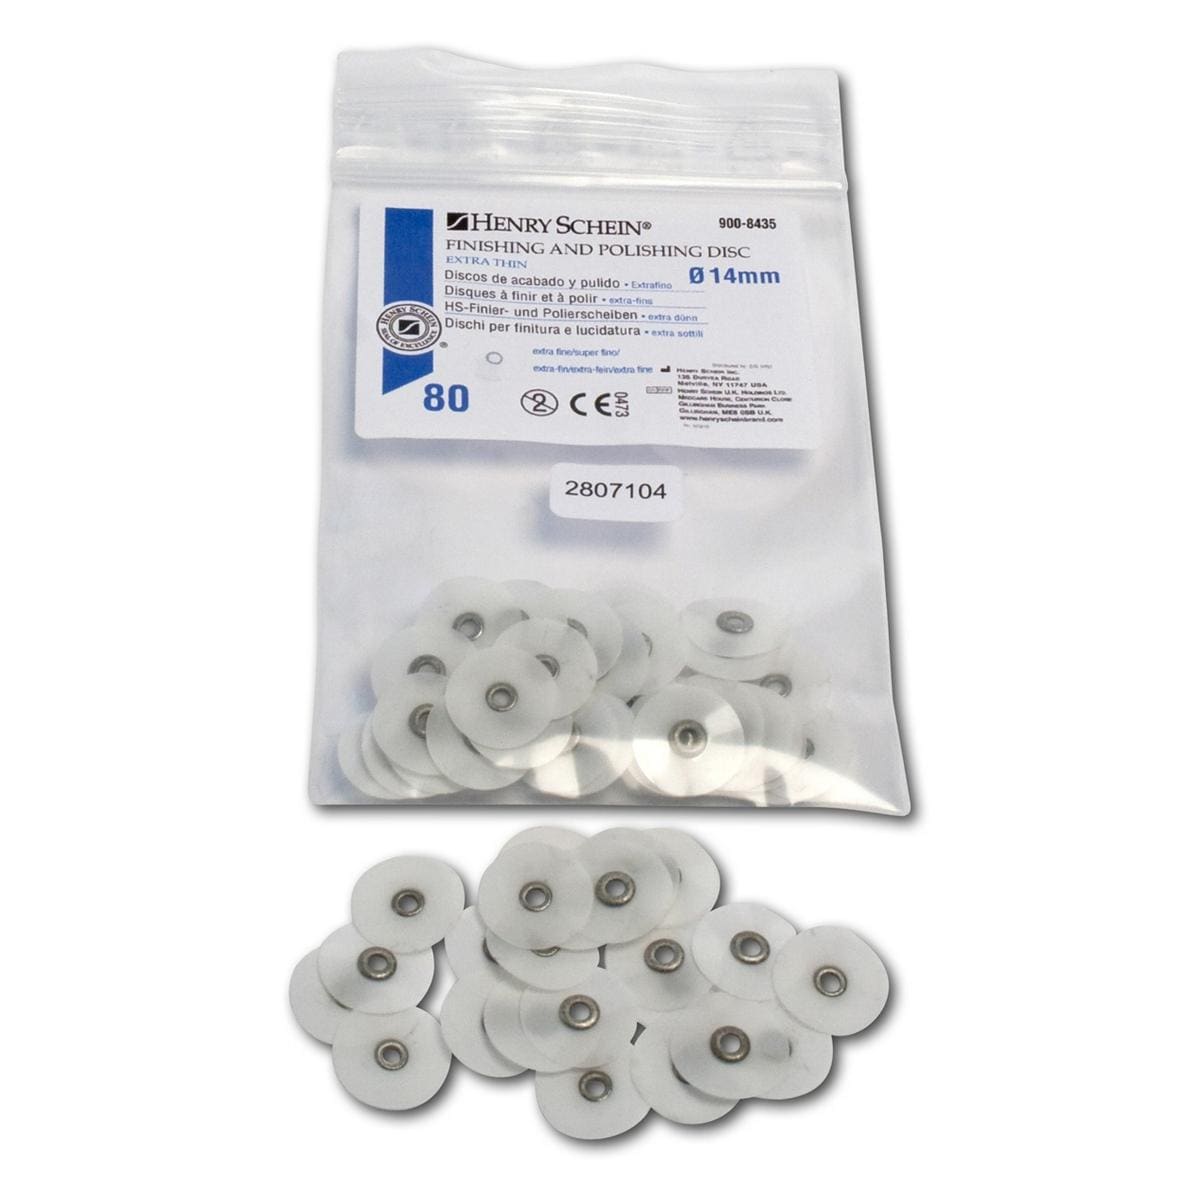 HS-Finier- und Polierscheiben extradünn - Nachfüllpackung - Weiß - extrafein, Ø 14 mm, Packung 80 Stück